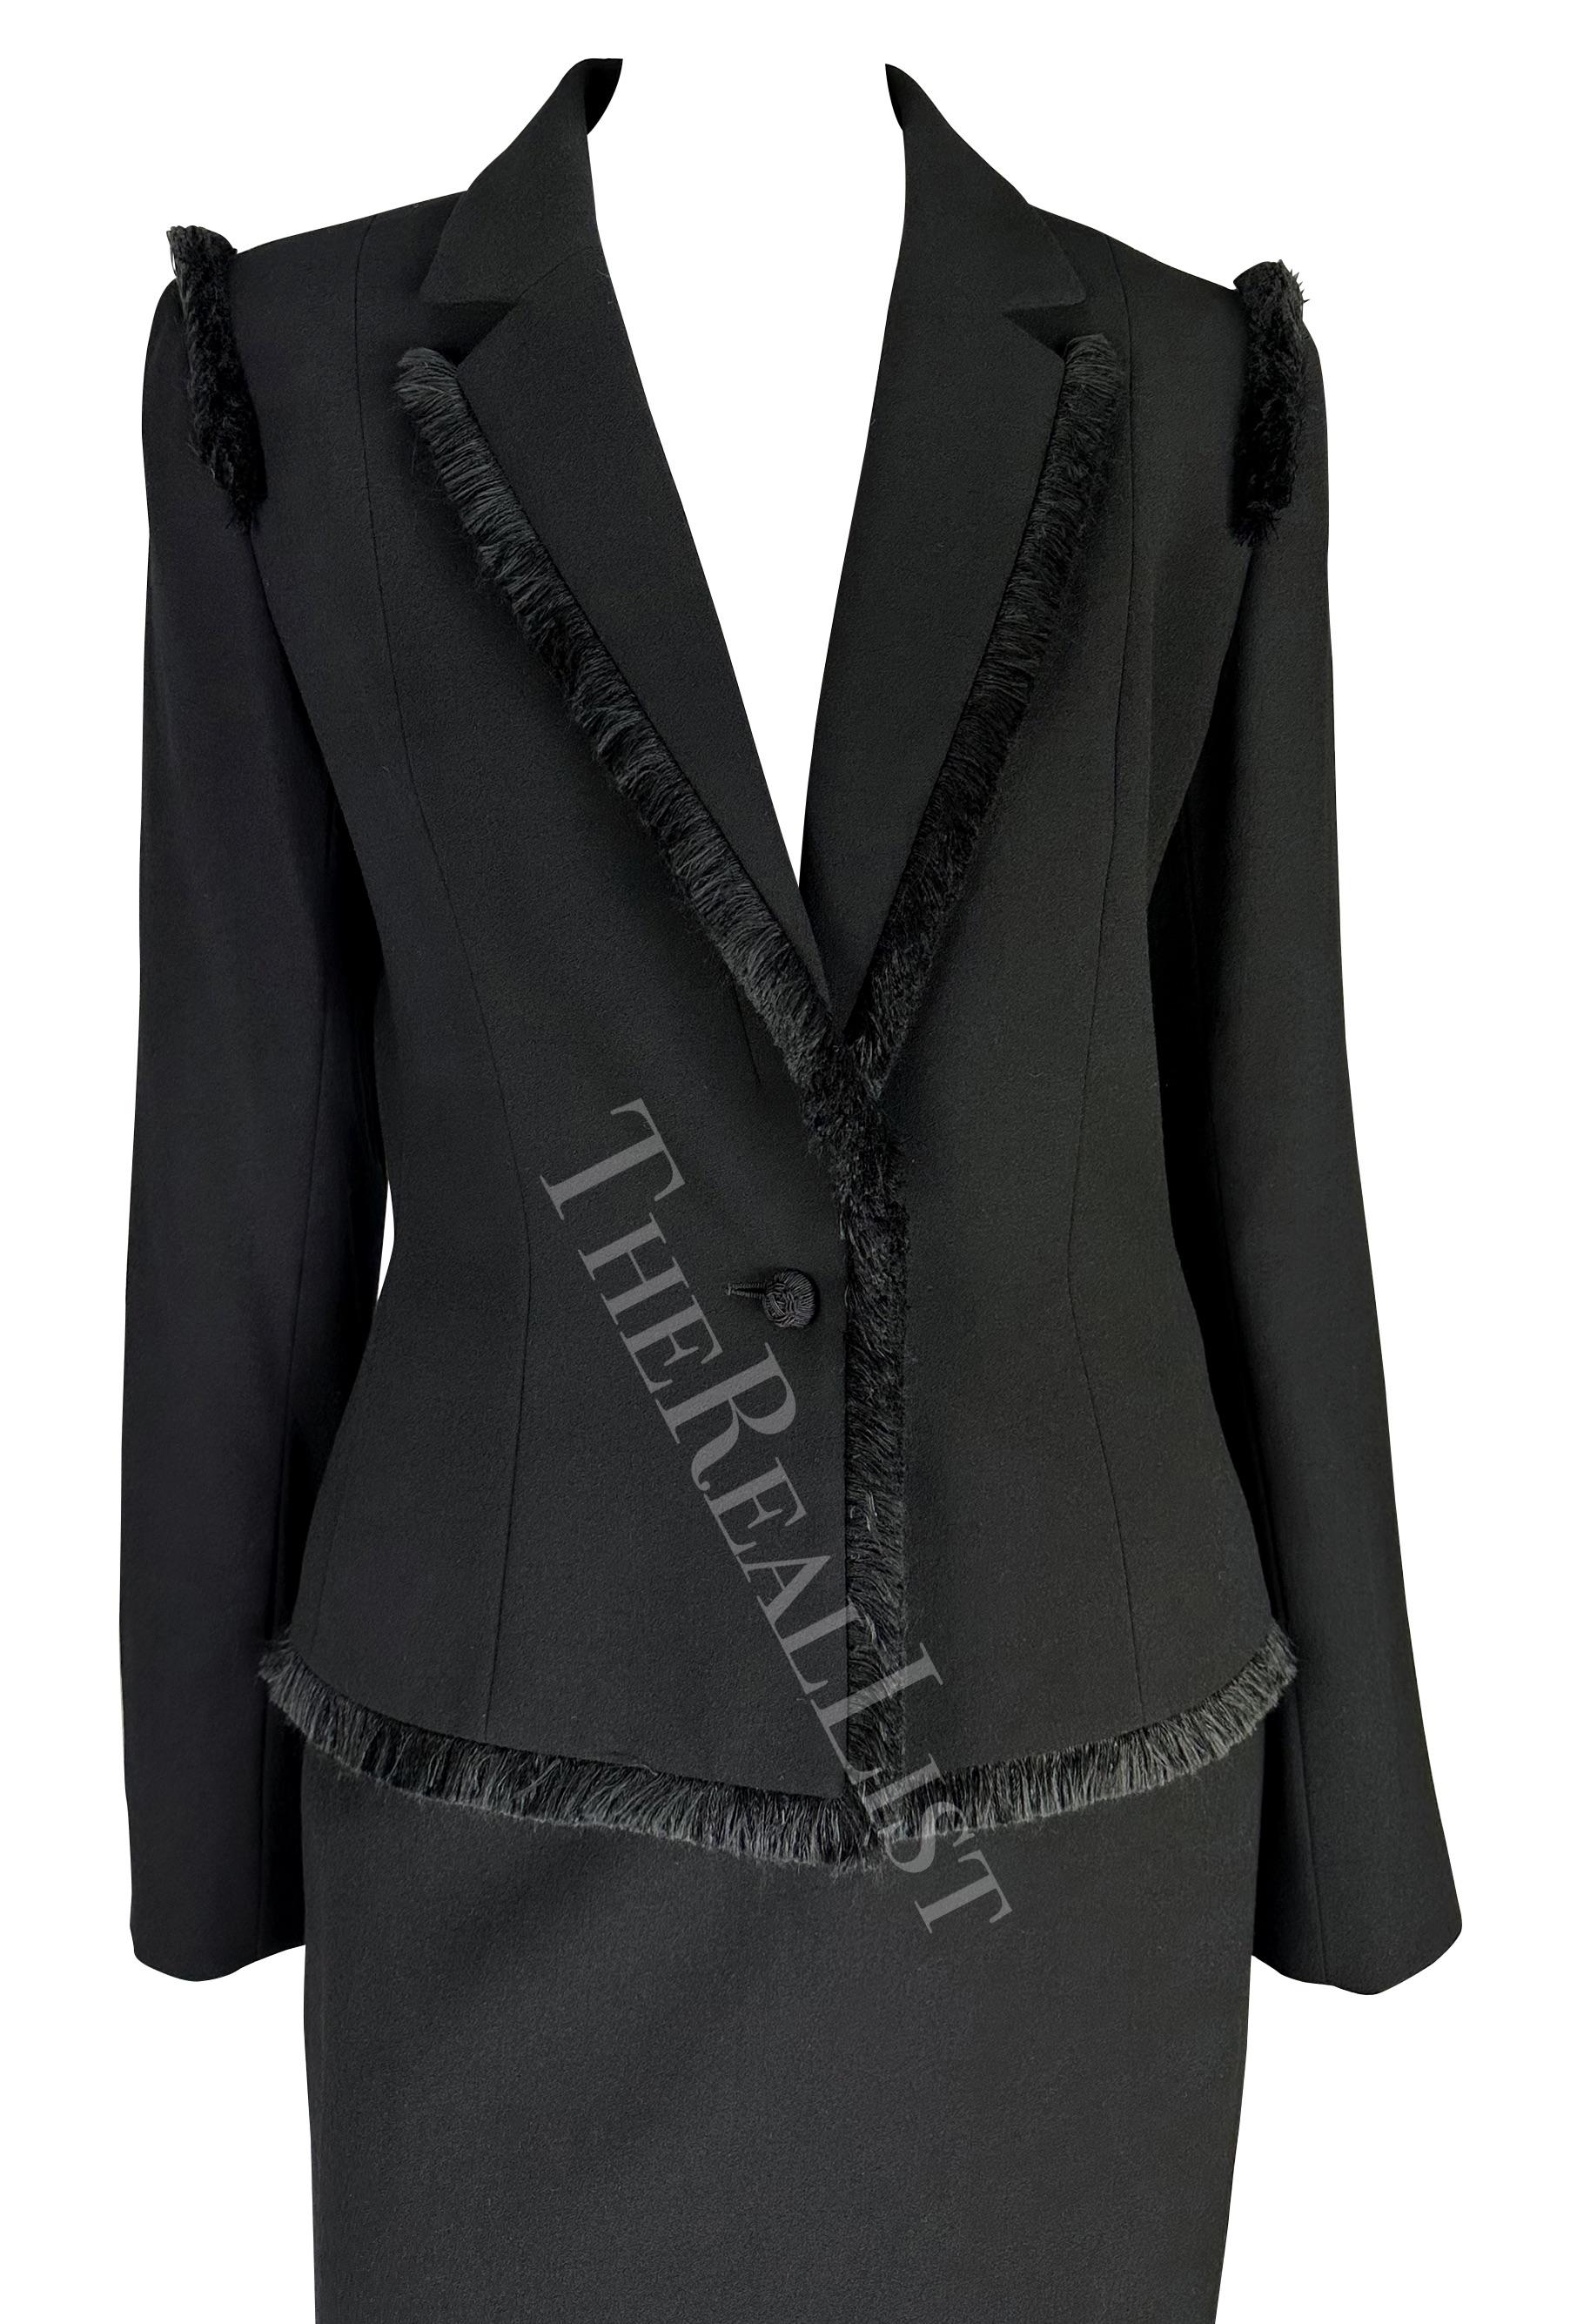 Présentation d'un fabuleux tailleur jupe noir Christian Dior, dessiné par John Galliano. Tiré de la collection automne-hiver 1998, ce tailleur jupe noir se compose d'un blazer orné de franges et d'une jupe crayon assortie. Le blazer de l'ensemble se